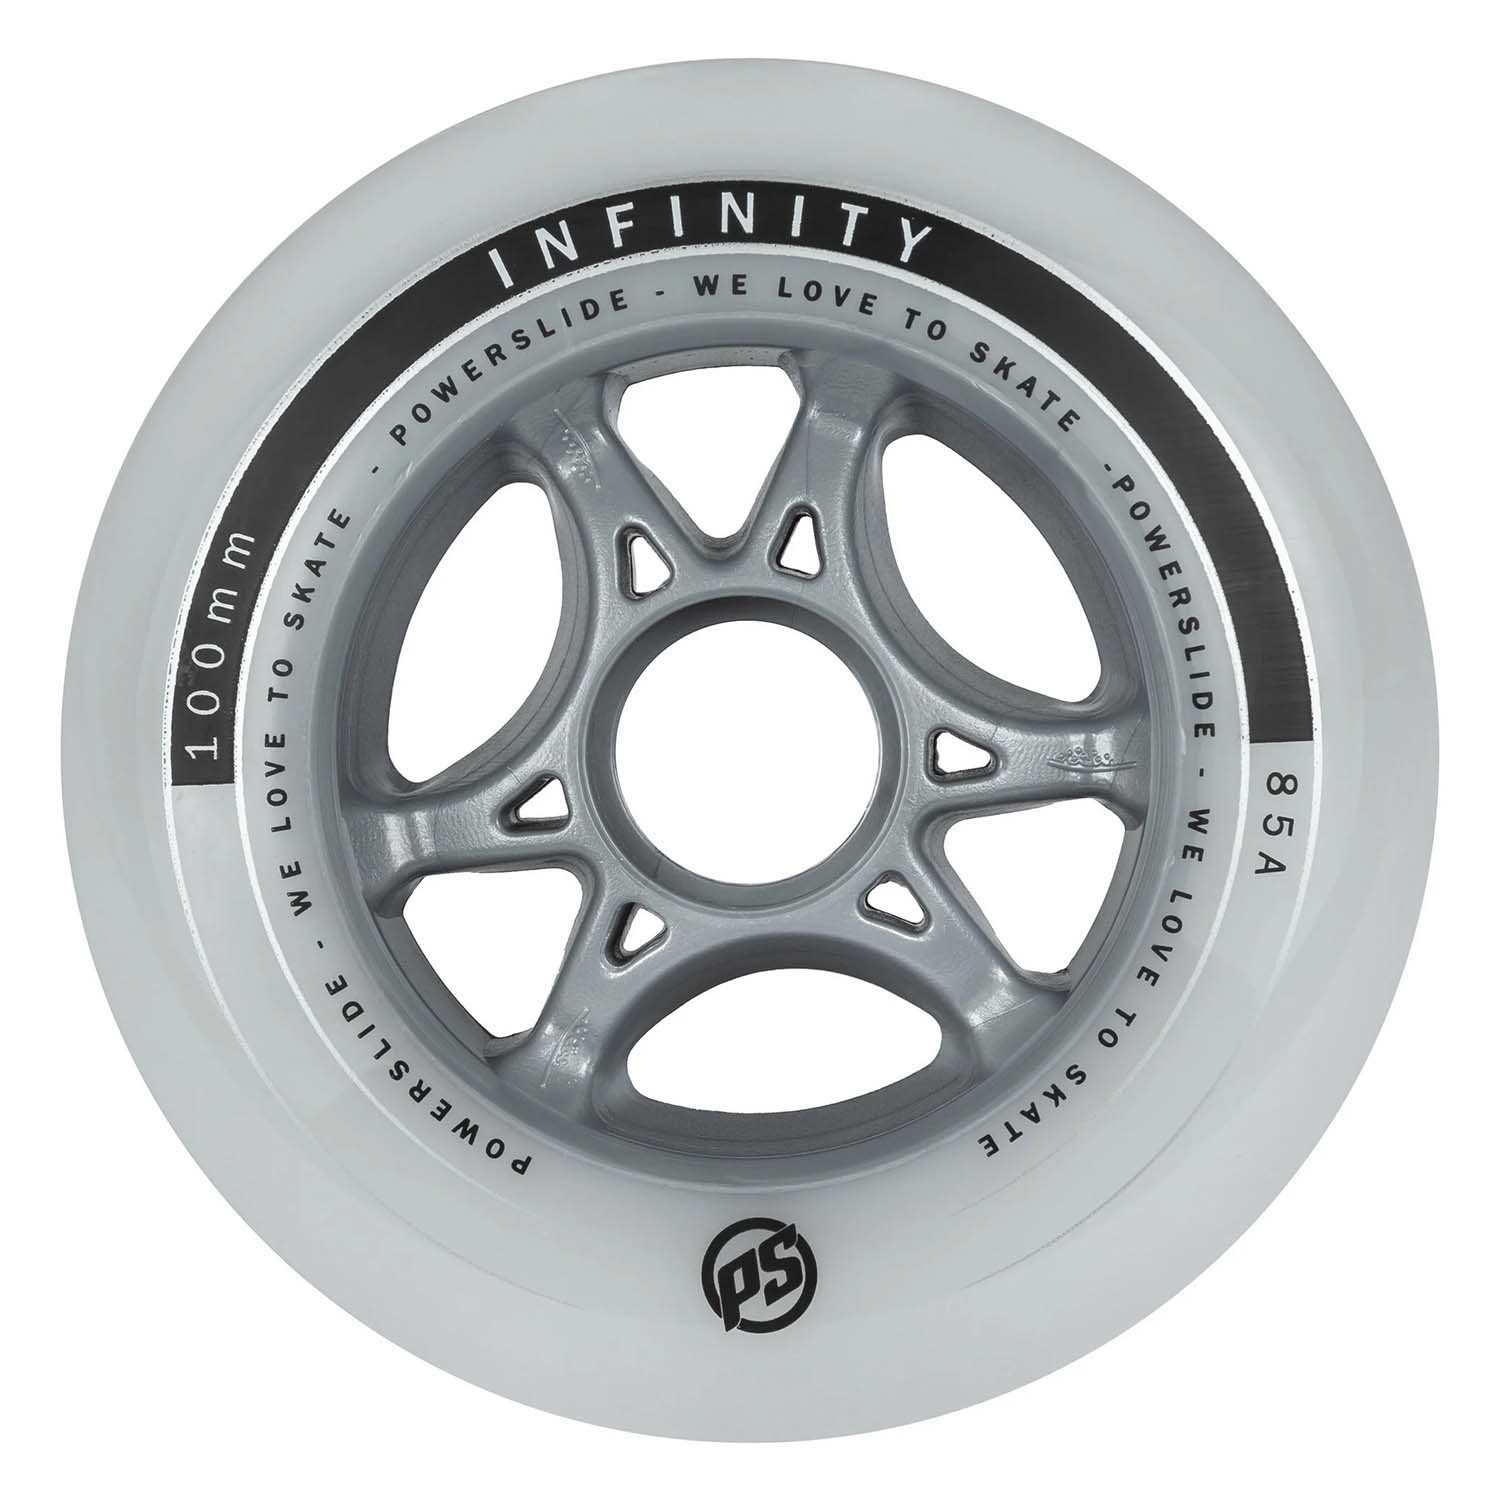 Комплект колёс для роликов Powerslide Infinity 100/85A, 4-pack Silver/Grey